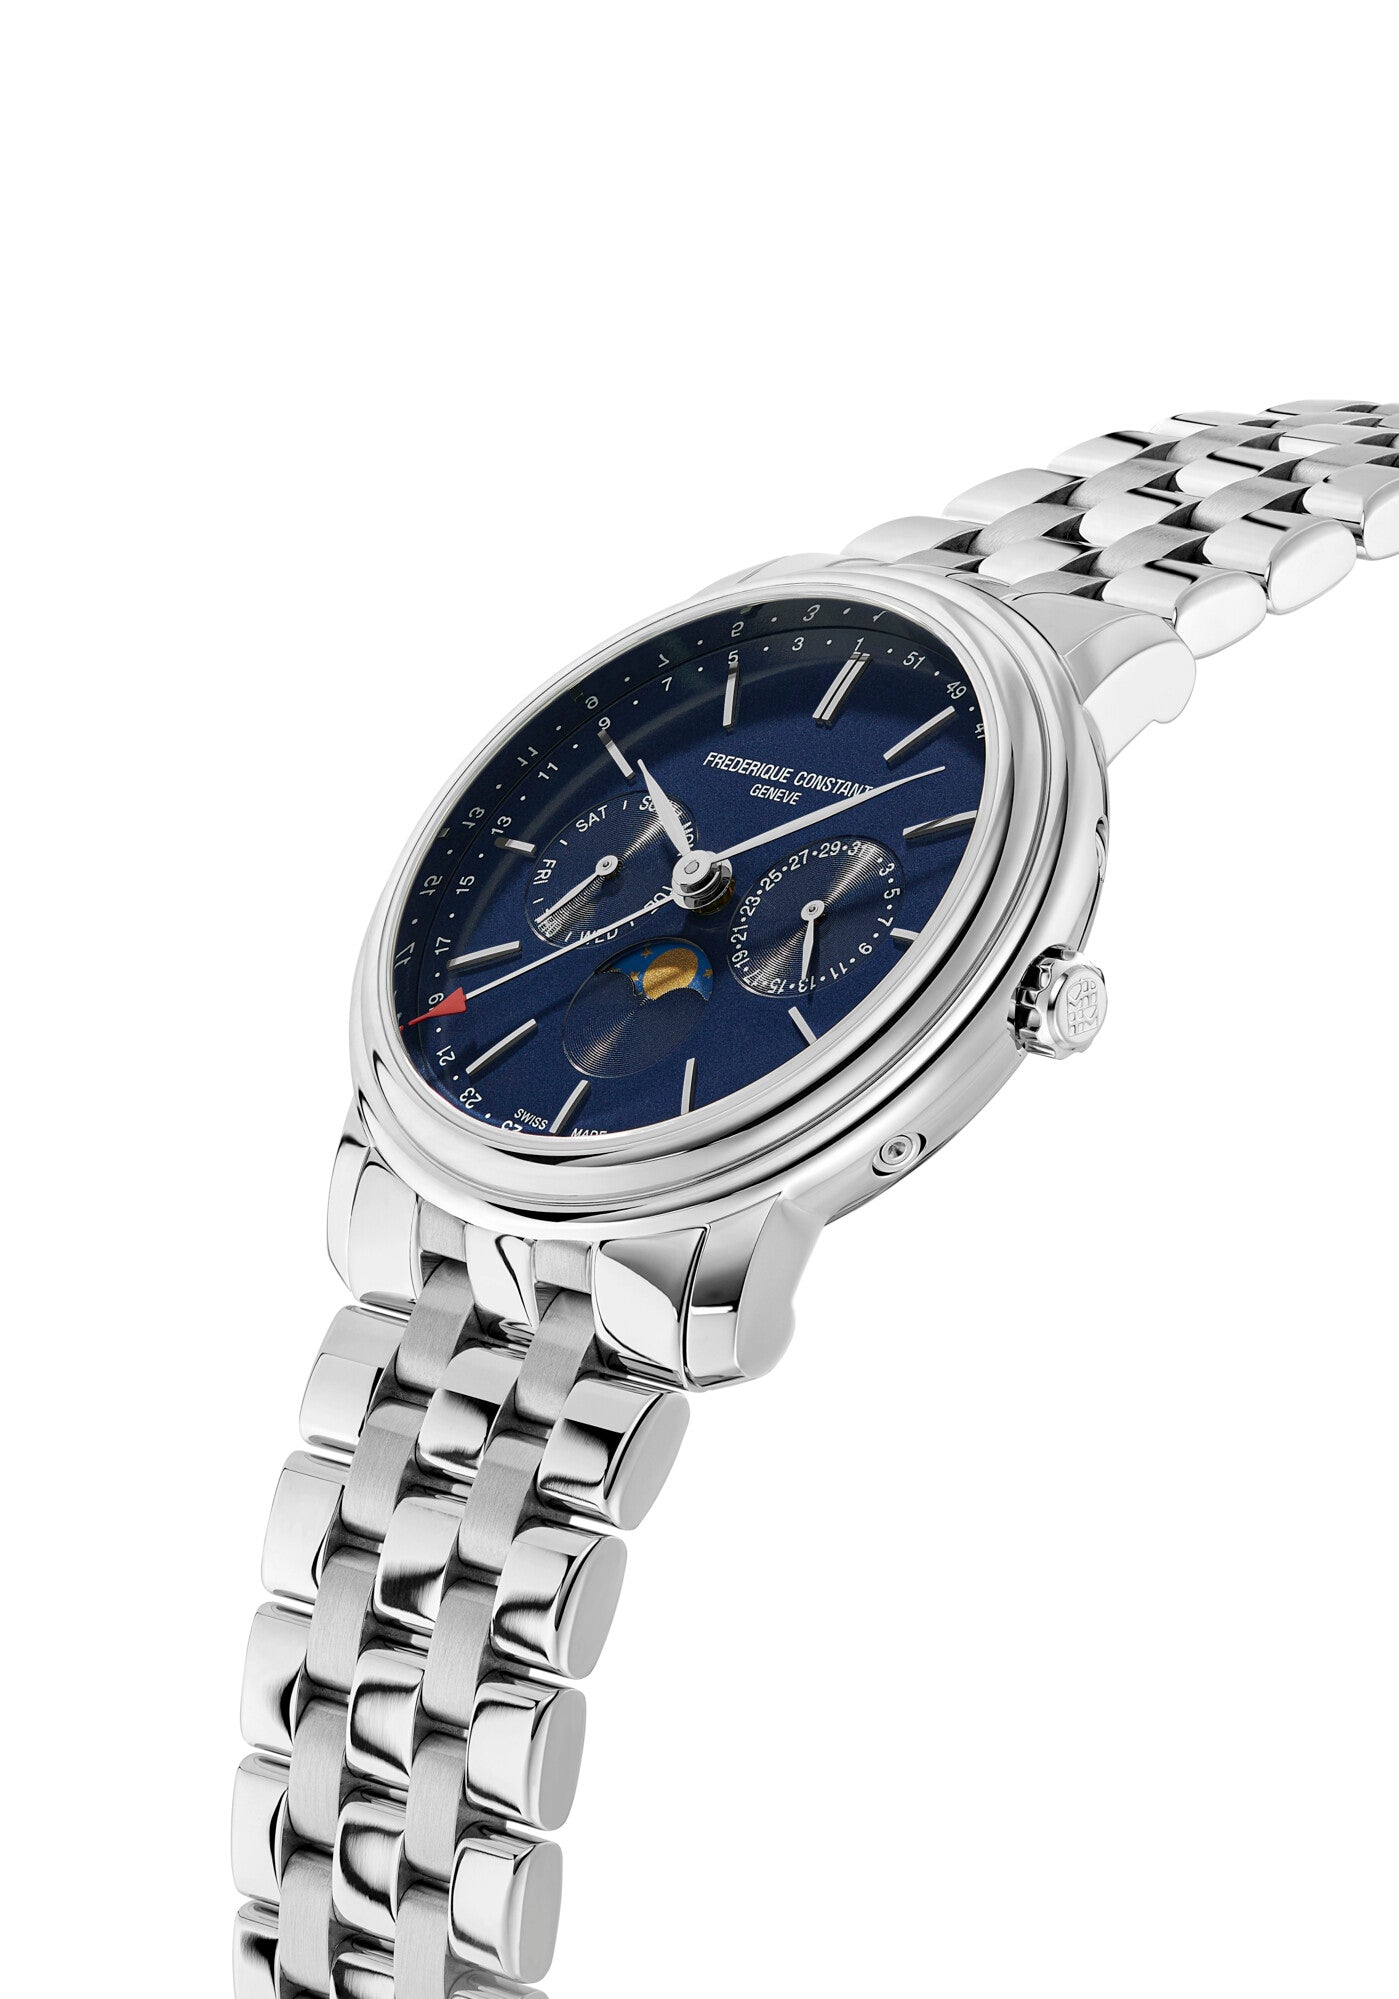 Frederique Constant Uhren Mondanzeige Wochentagsanzeige Datumsanzeige Silber Gehäuse Silber Armband Blau Zifferblatt Oberturm Uhren in Aarau